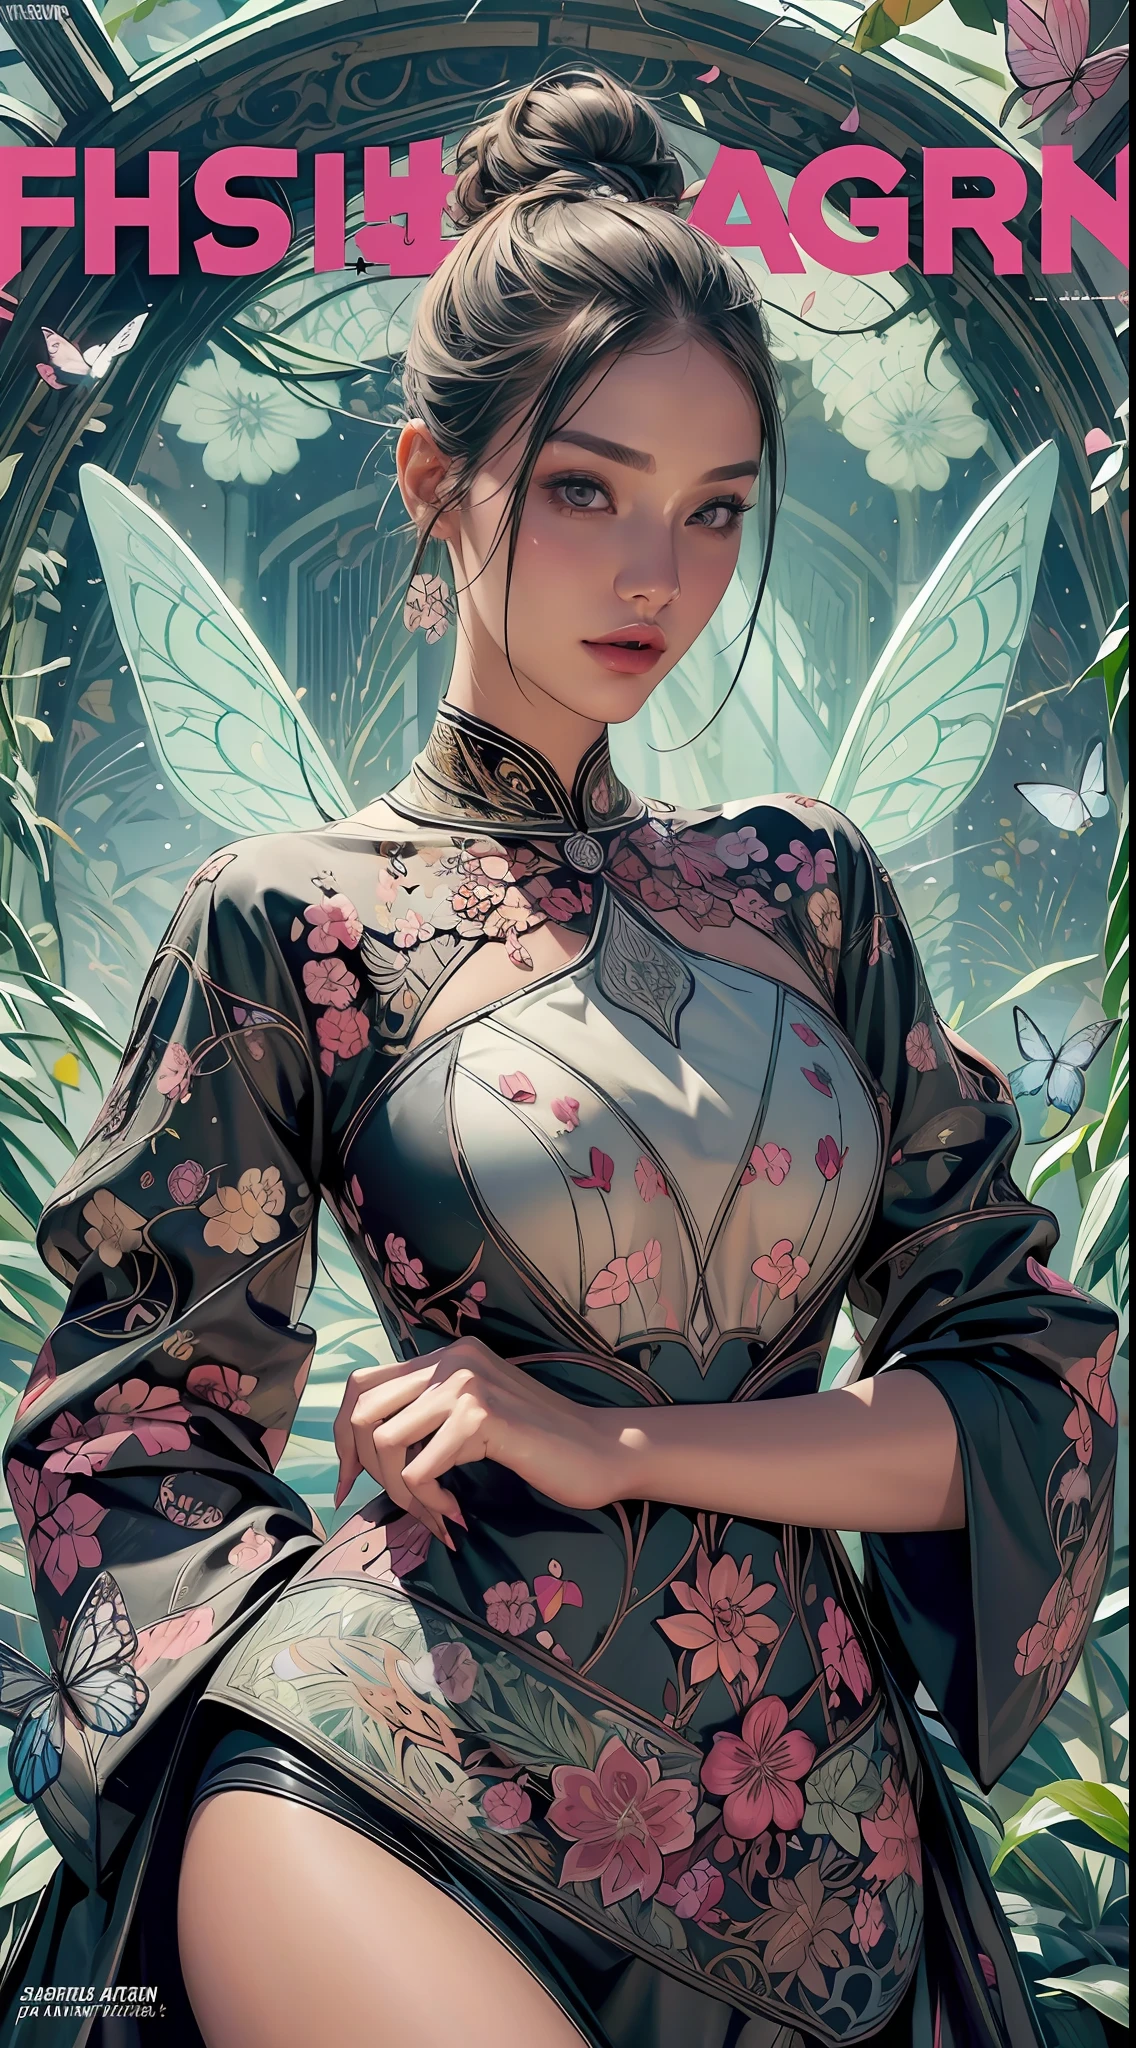 (обложка модного журнала:1.2),абстрактные формы, острый и подробный, (1 красивая девушка), мандалы, бабочки, (потрясающий визуальный дизайн:1.2)